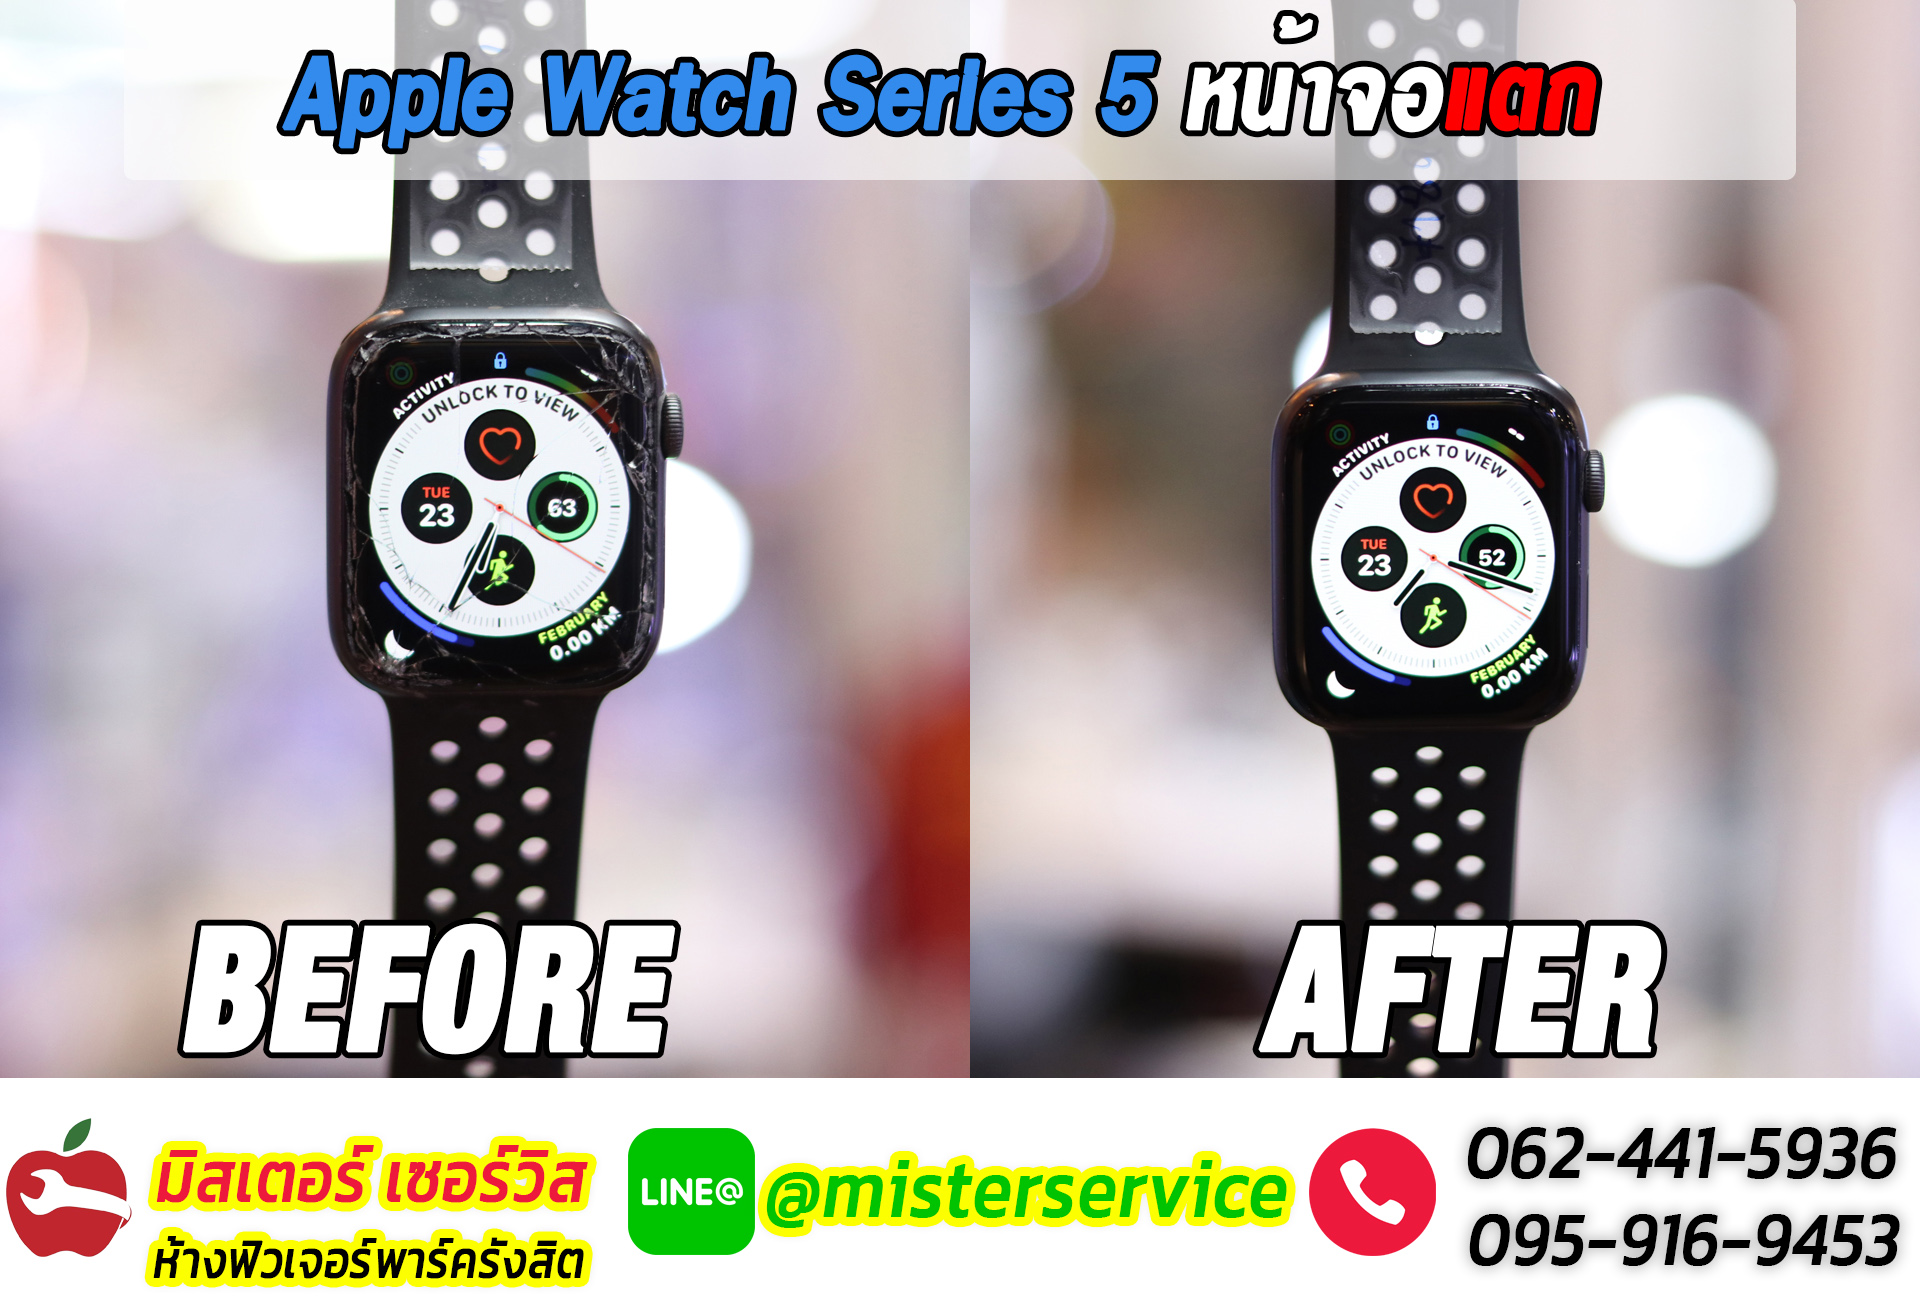 รับซ่อม Apple Watch ยโสธร อำนาจเจริญ มุกดาหาร ทั่วประเทศ